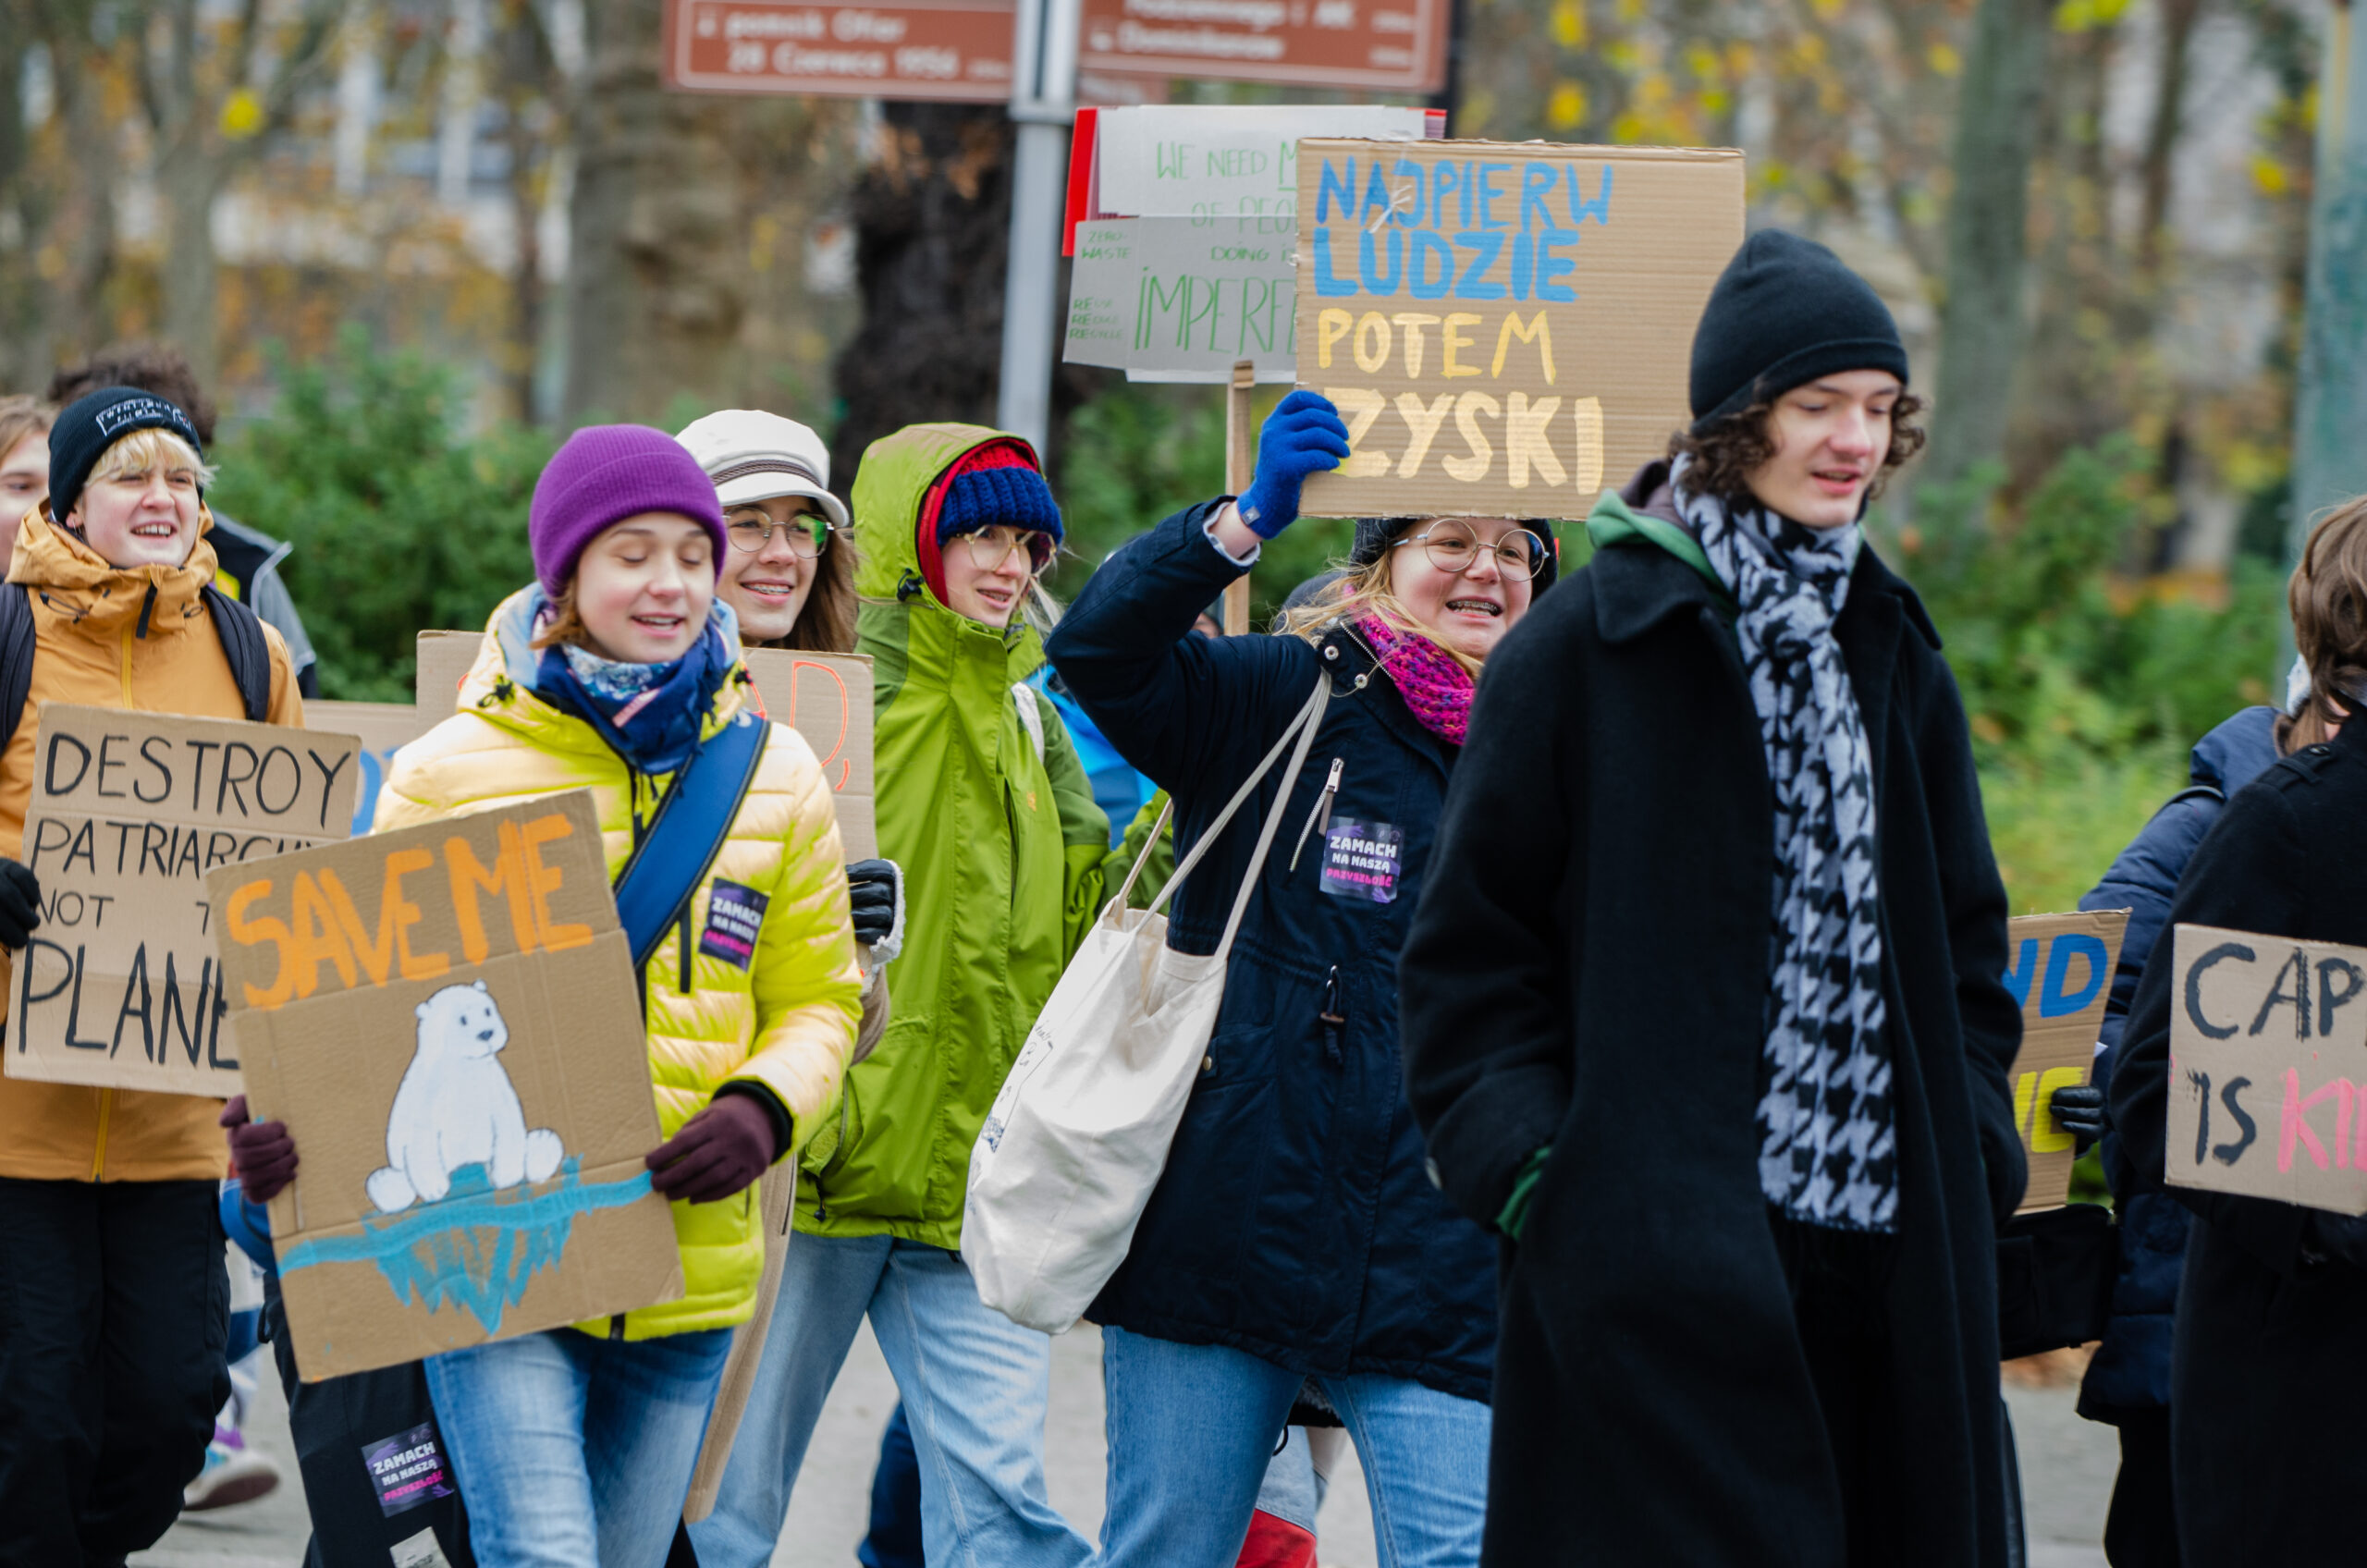 “Jeszcze nie wymarła, póki my żyjemy” – Protest Młodzieżowego Strajku Klimatycznego w Poznaniu